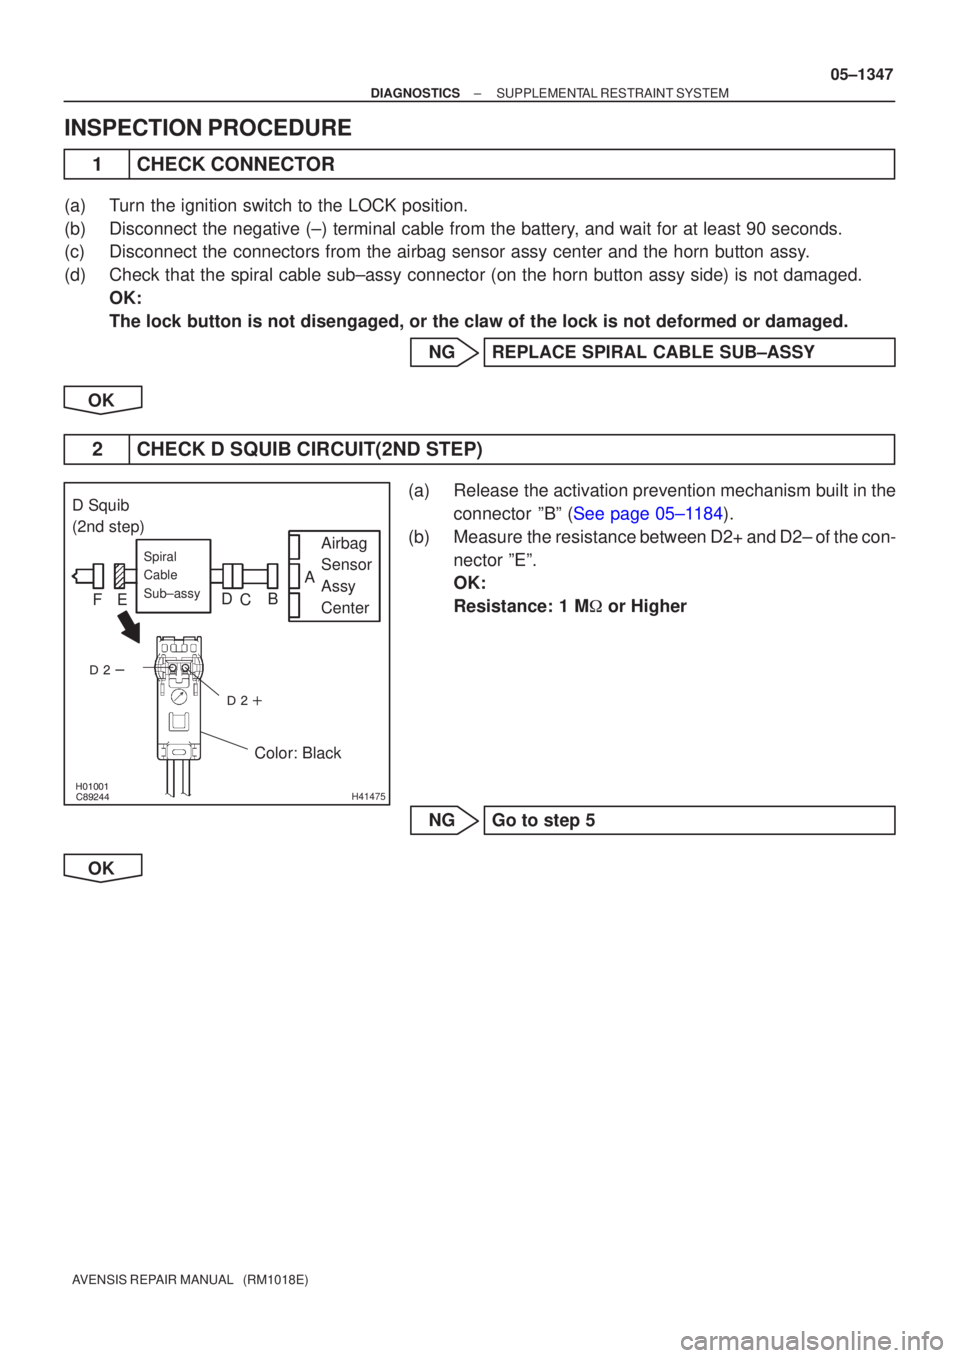 TOYOTA AVENSIS 2005  Service Repair Manual \b


H41475
D Squib
(2nd step)
Airbag
Sensor
Assy
Center
Spiral 
Cable 
Sub±assy
Color: Black
A
B
C
D
E
F
±
DIAGNOSTICS SUPPLEMENTAL RESTRAINT SYSTEM
05±1347
AVENSIS REPAIR MANUAL 